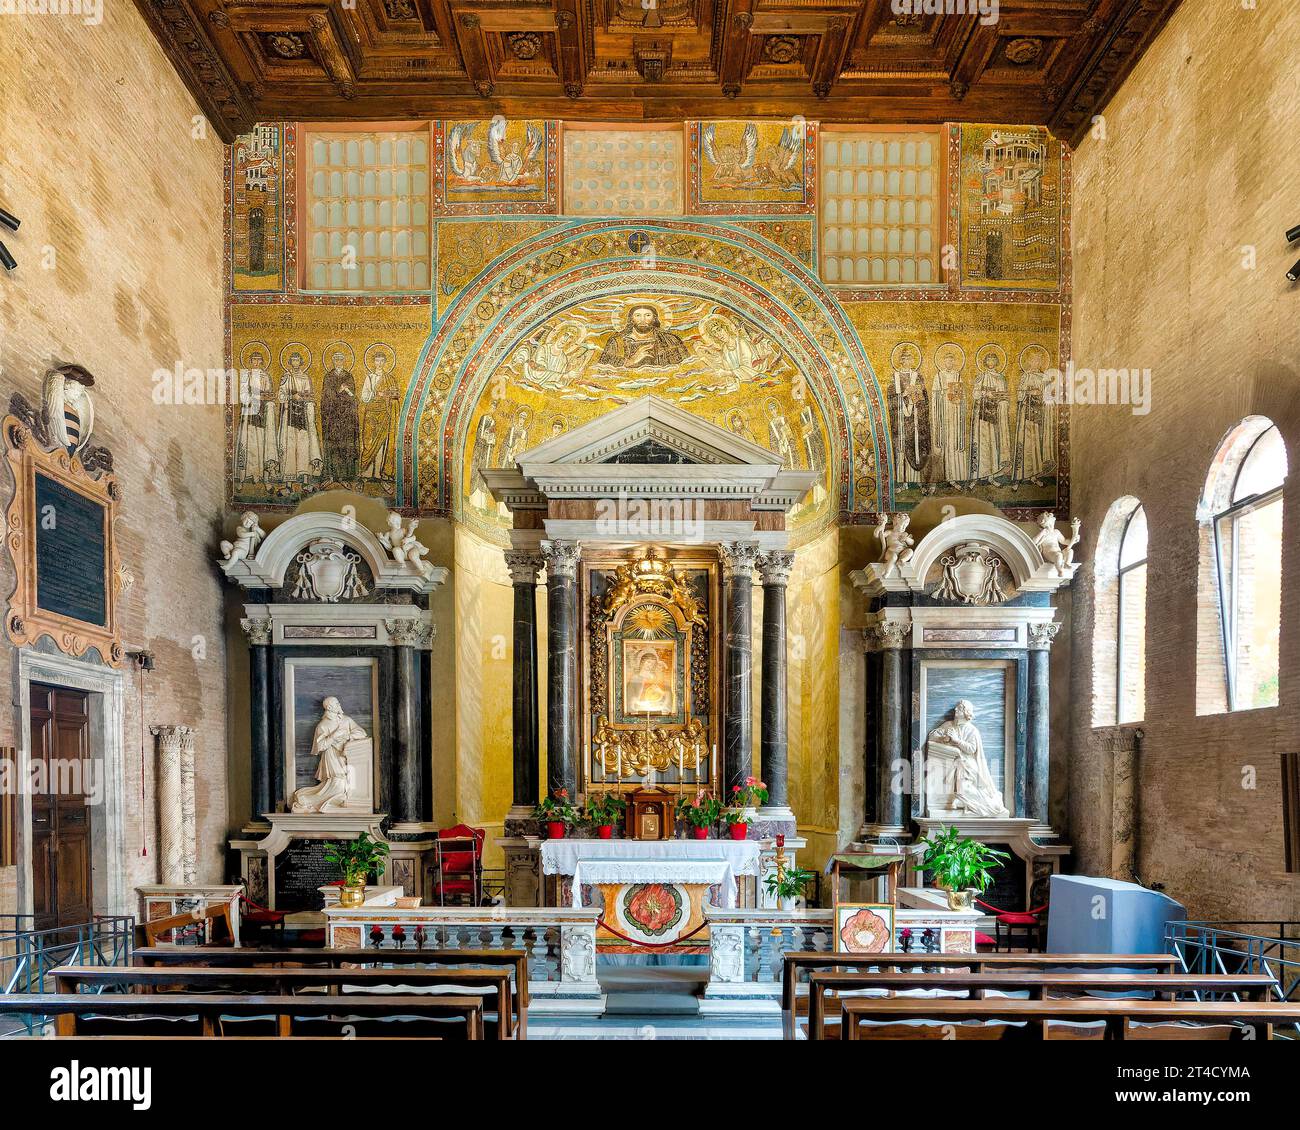 Interior of the Lateran Baptistery, Rome, Italy Stock Photo - Alamy